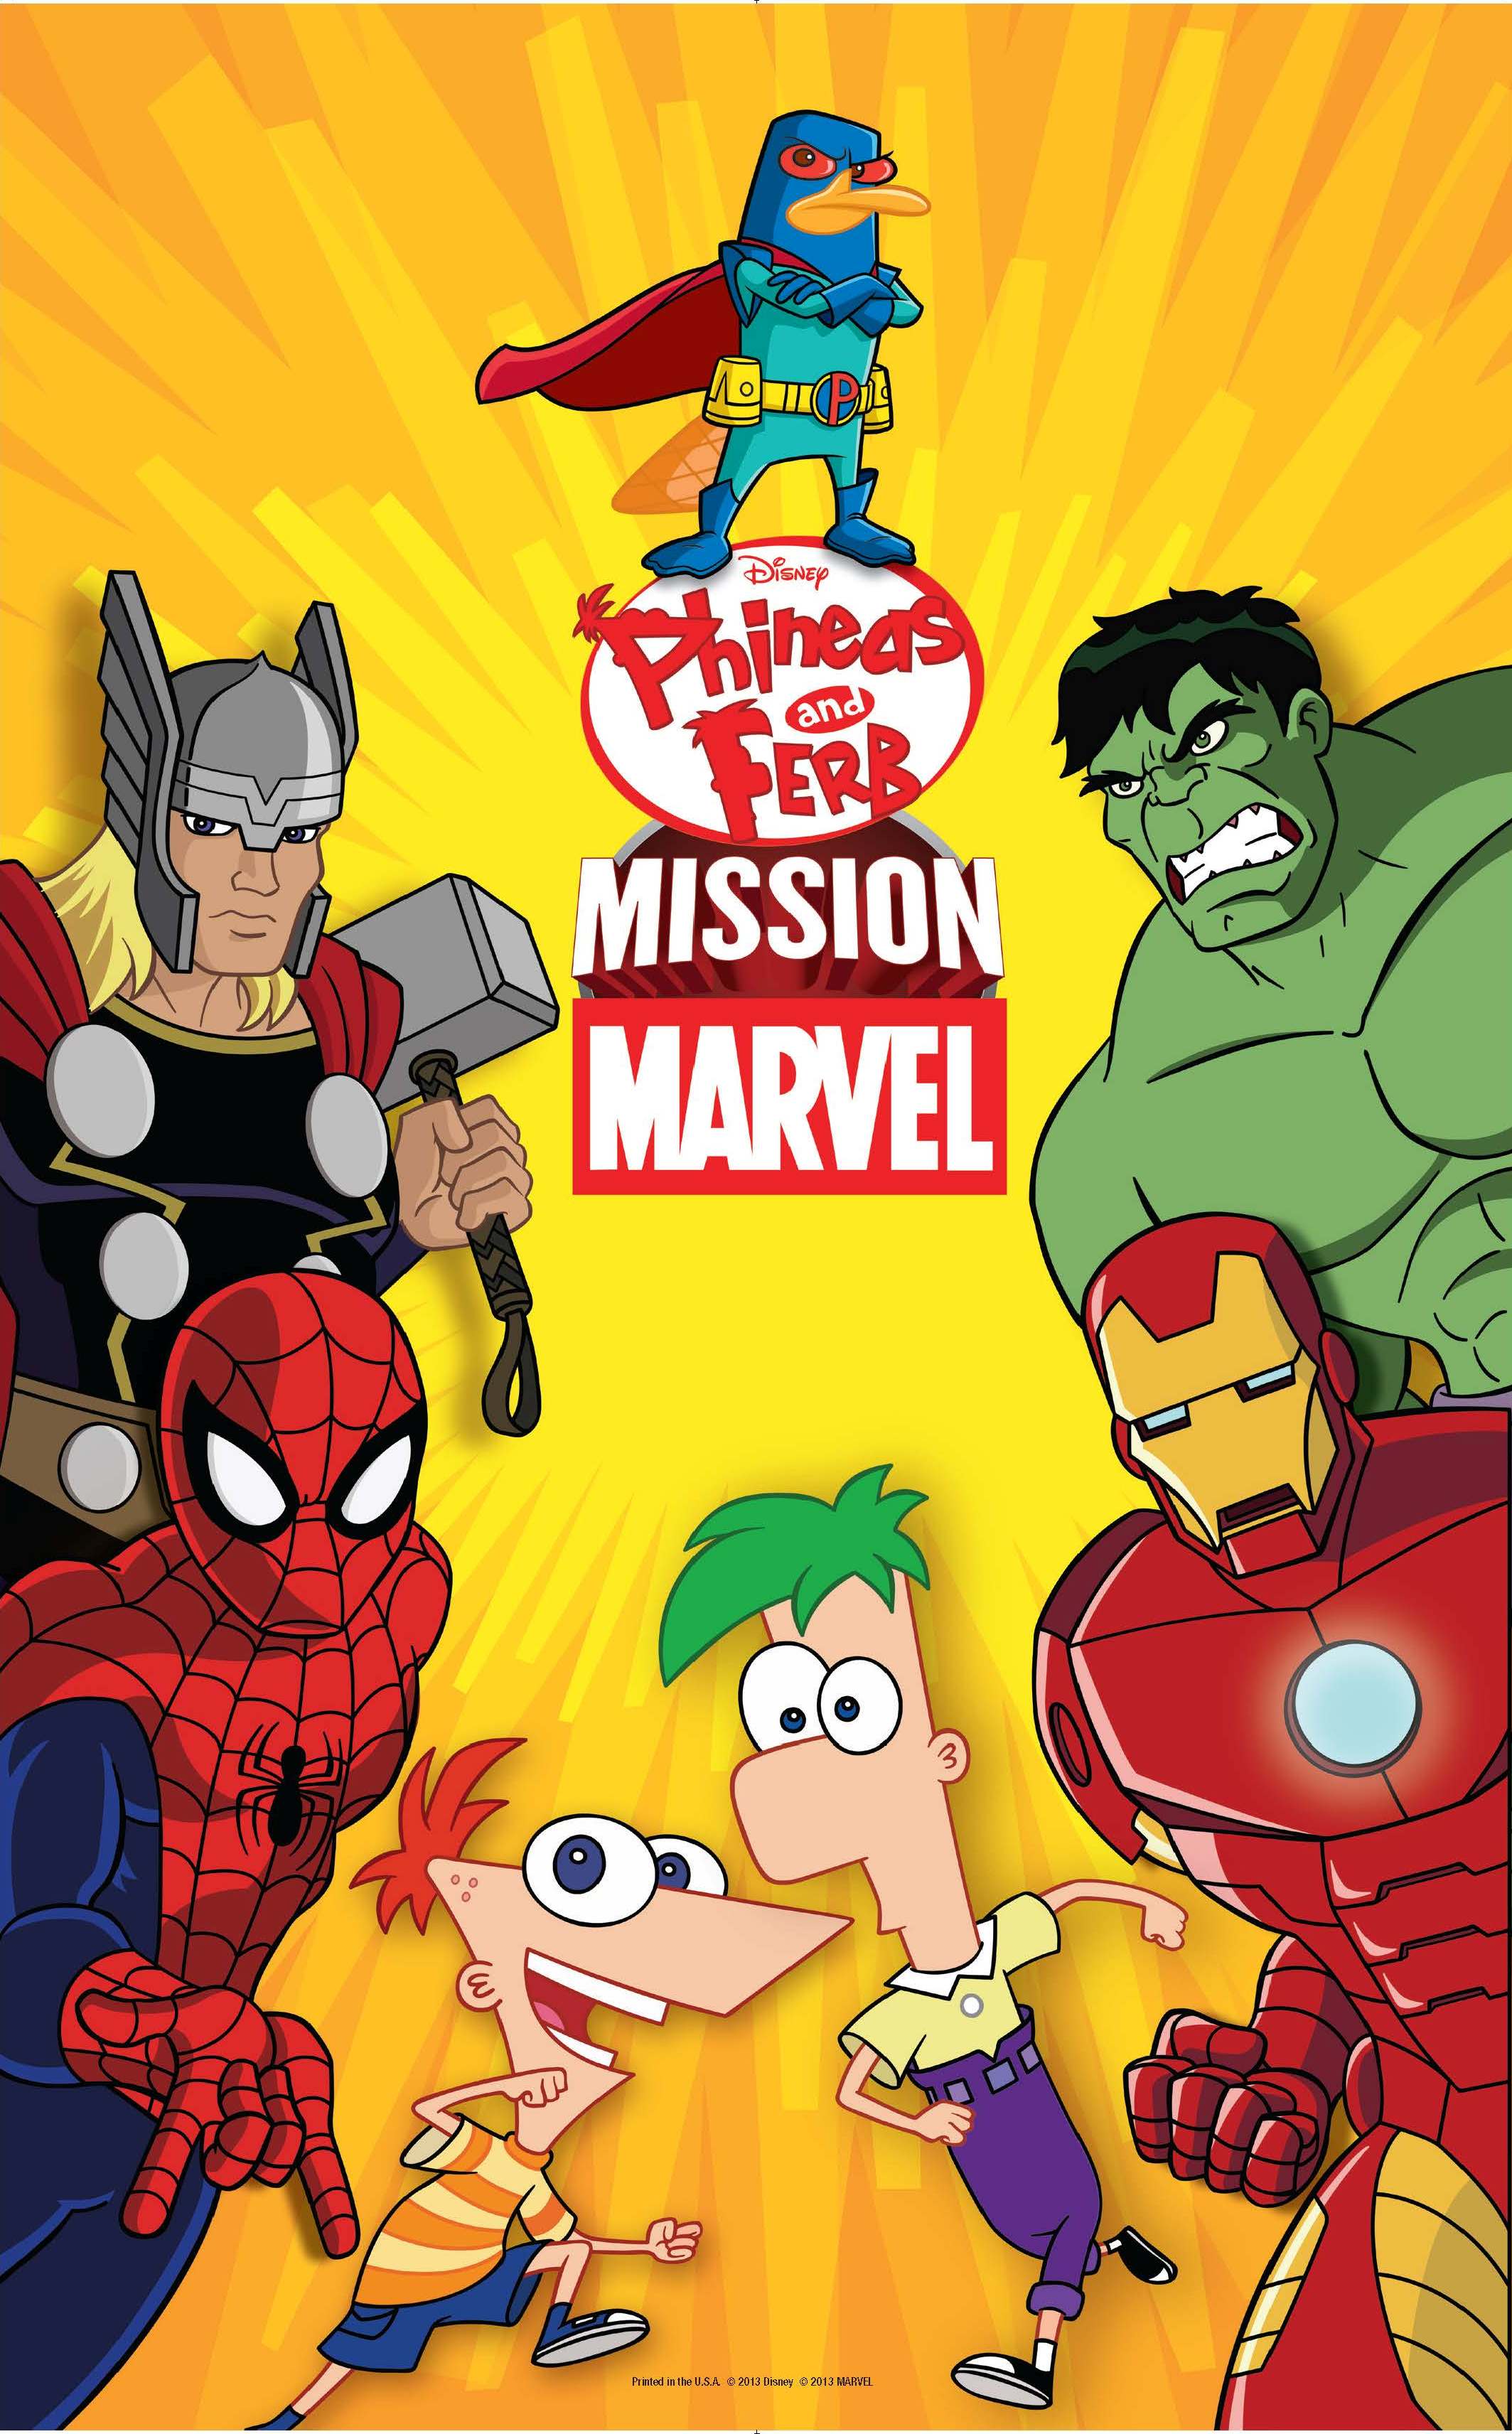 Mission Marvel Poster 1